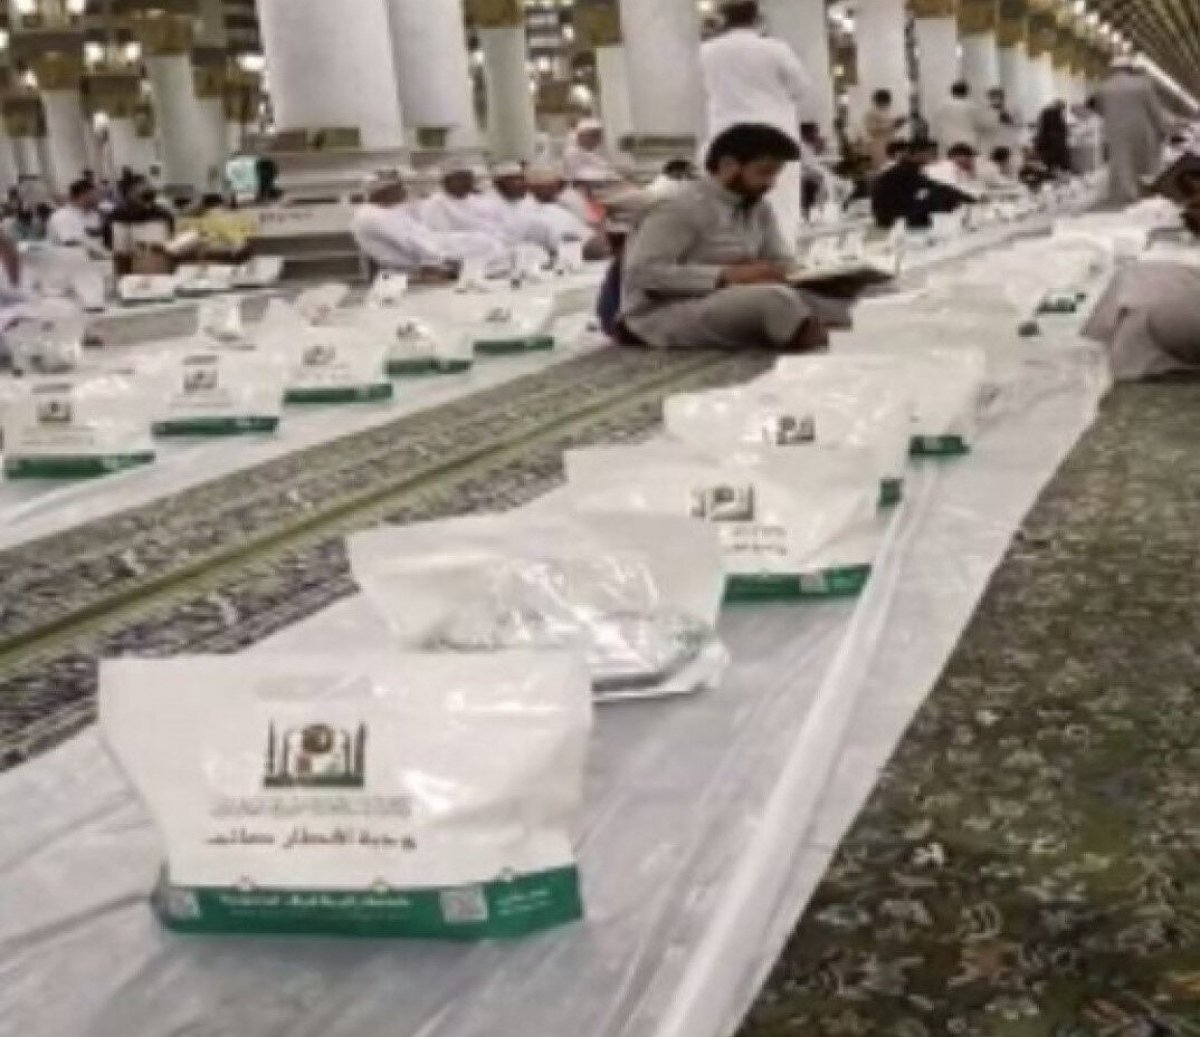 Muslims had iftar at the Kaaba and Masjid an-Nabawi #2